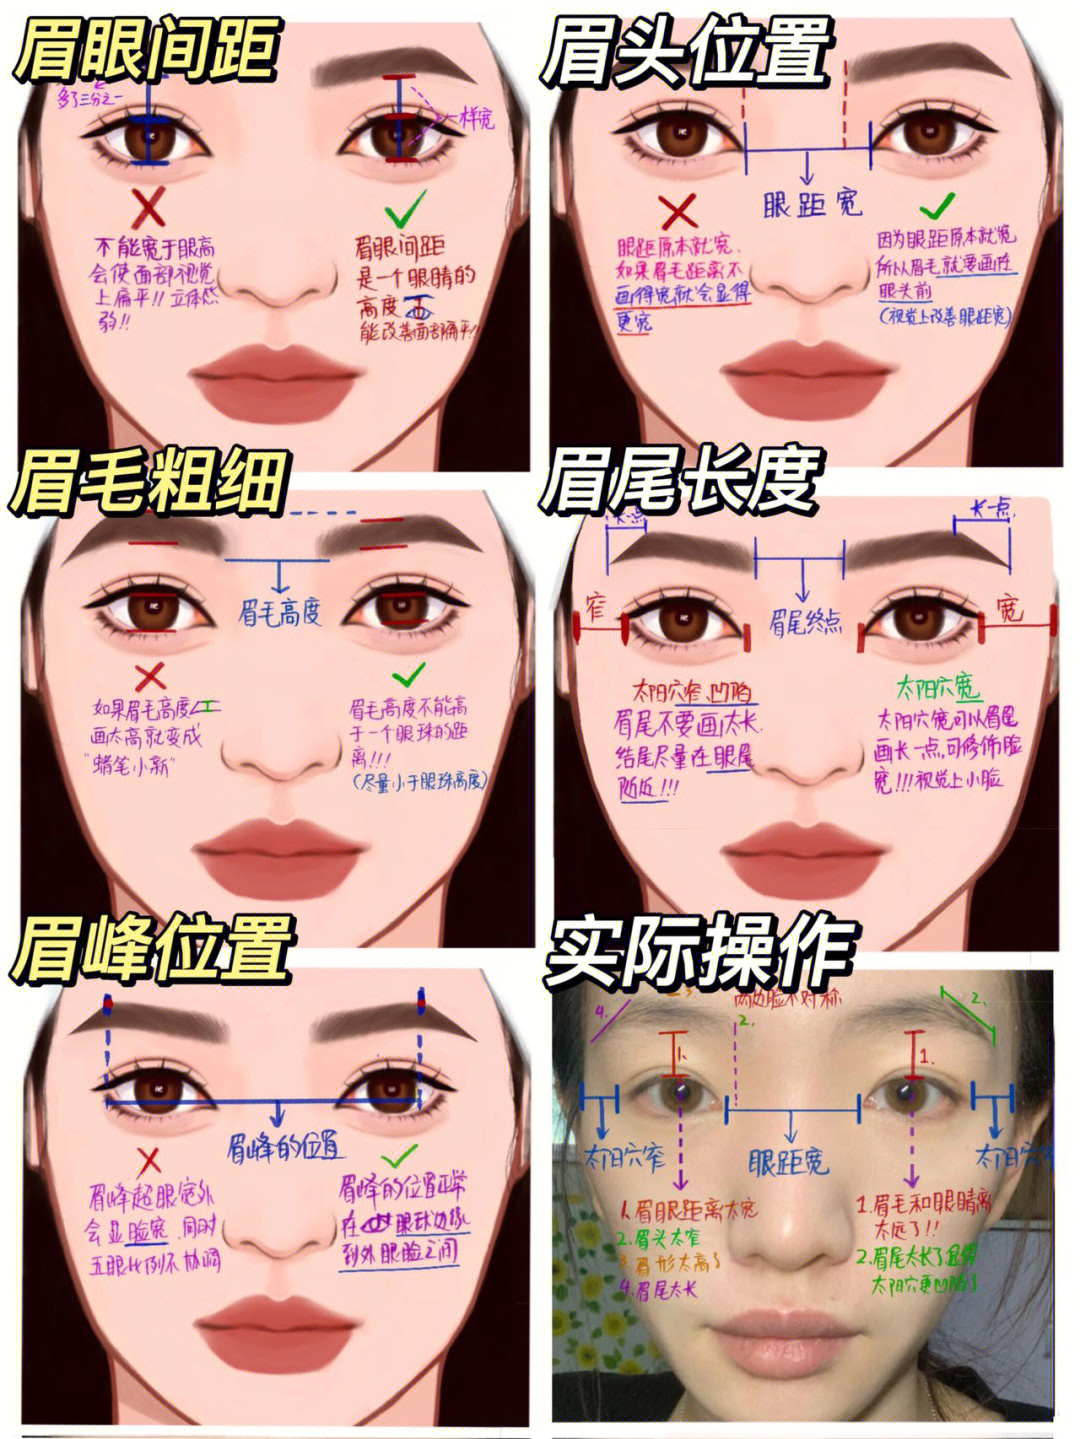 眉毛的画法步骤图解图片